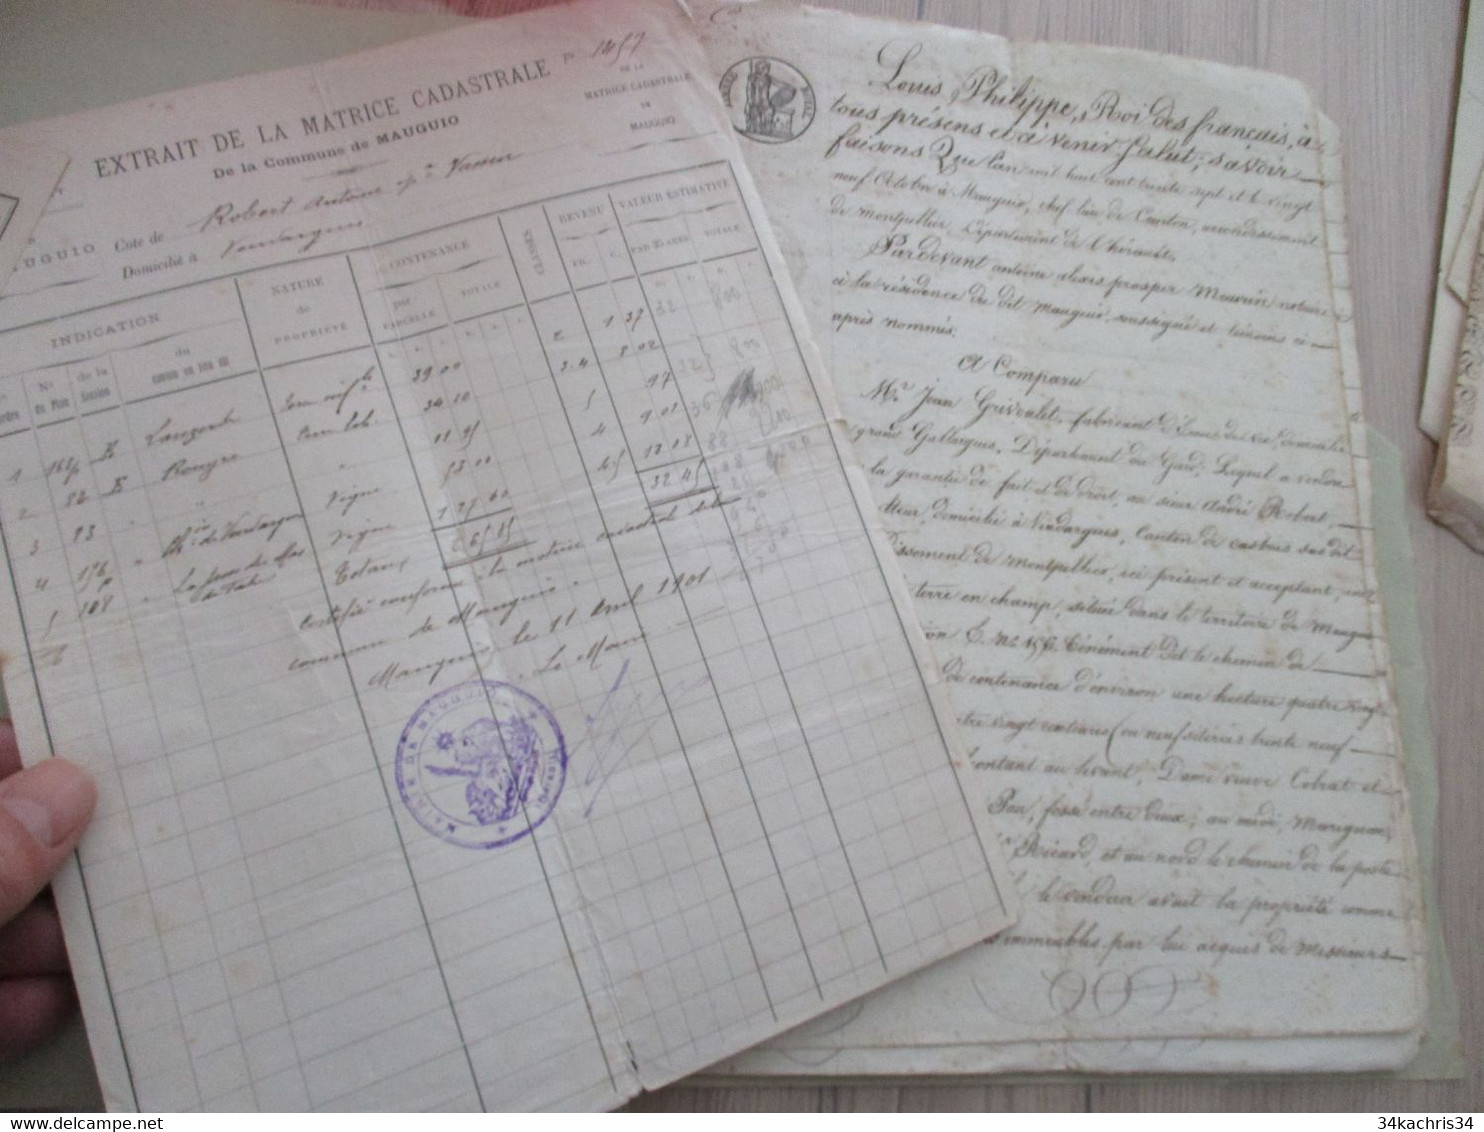 JF Archive Acte Hérault Vente Terre à Mauguio 1837 Grivoulet Marchand D'eau De Vie Gallargues/Robert Vendargues - Manuskripte